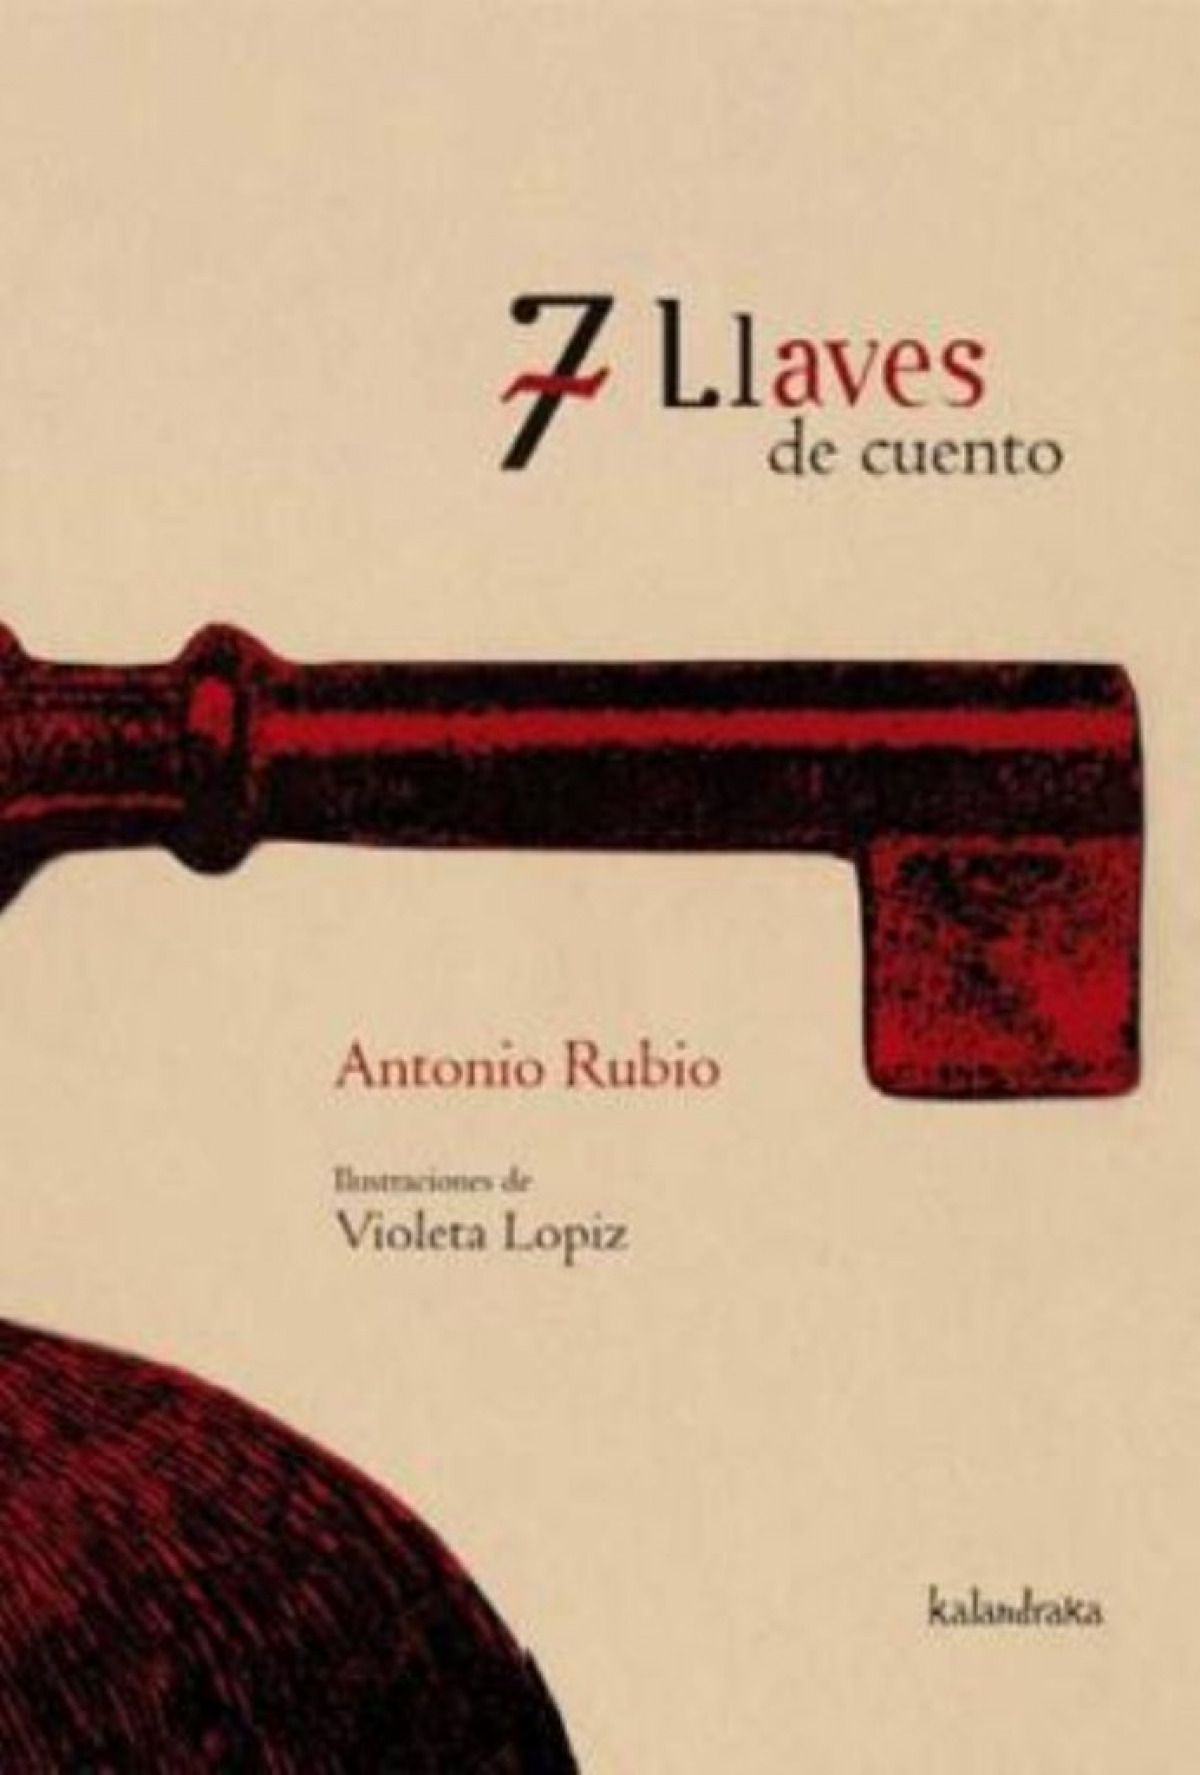 7 llaves de cuento - Rubio, Antonio / Fernández Lópiz, Violeta